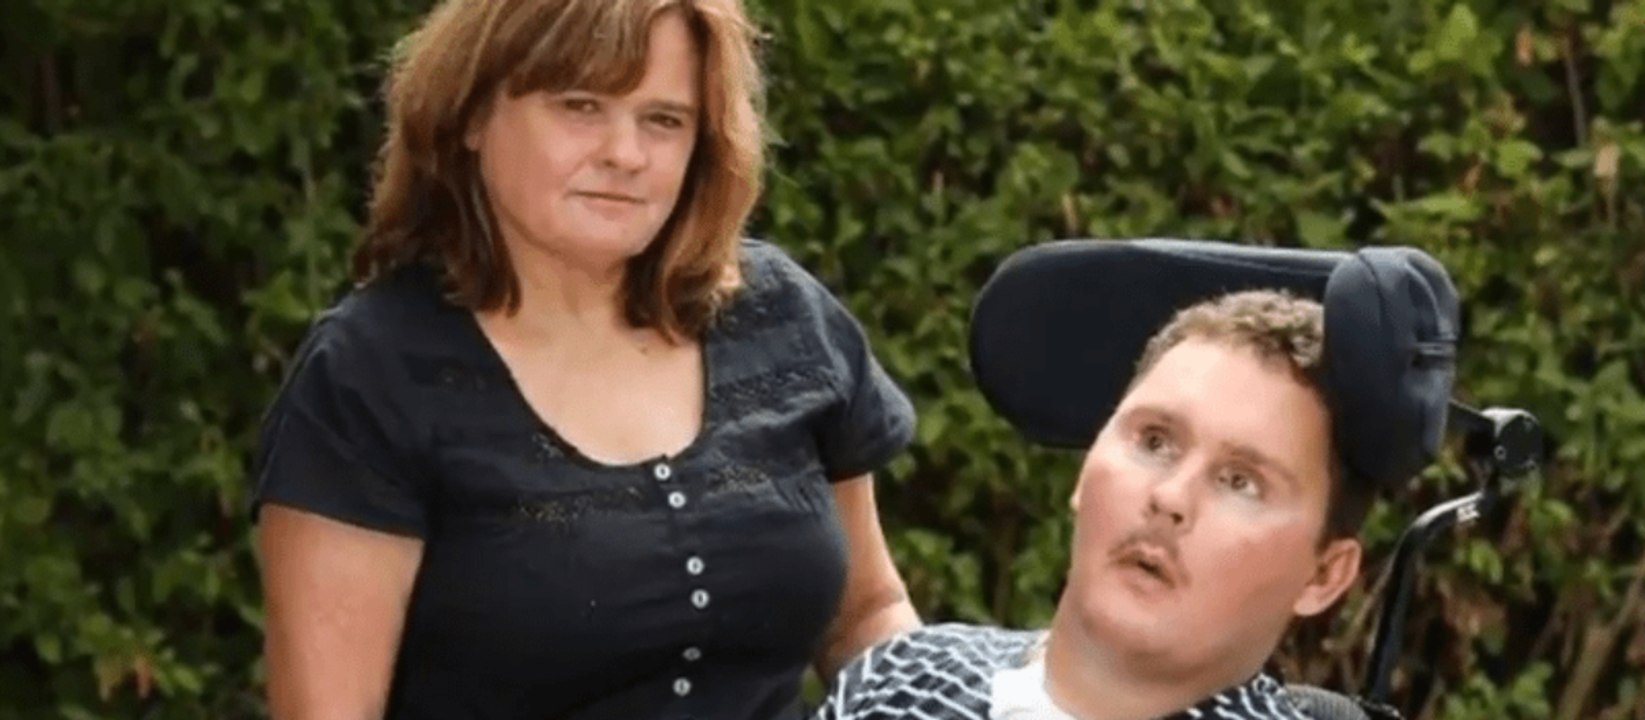 Wegen dieser elenden Ess-Wette sitzt ein Australier jahrelang behindert im Rollstuhl